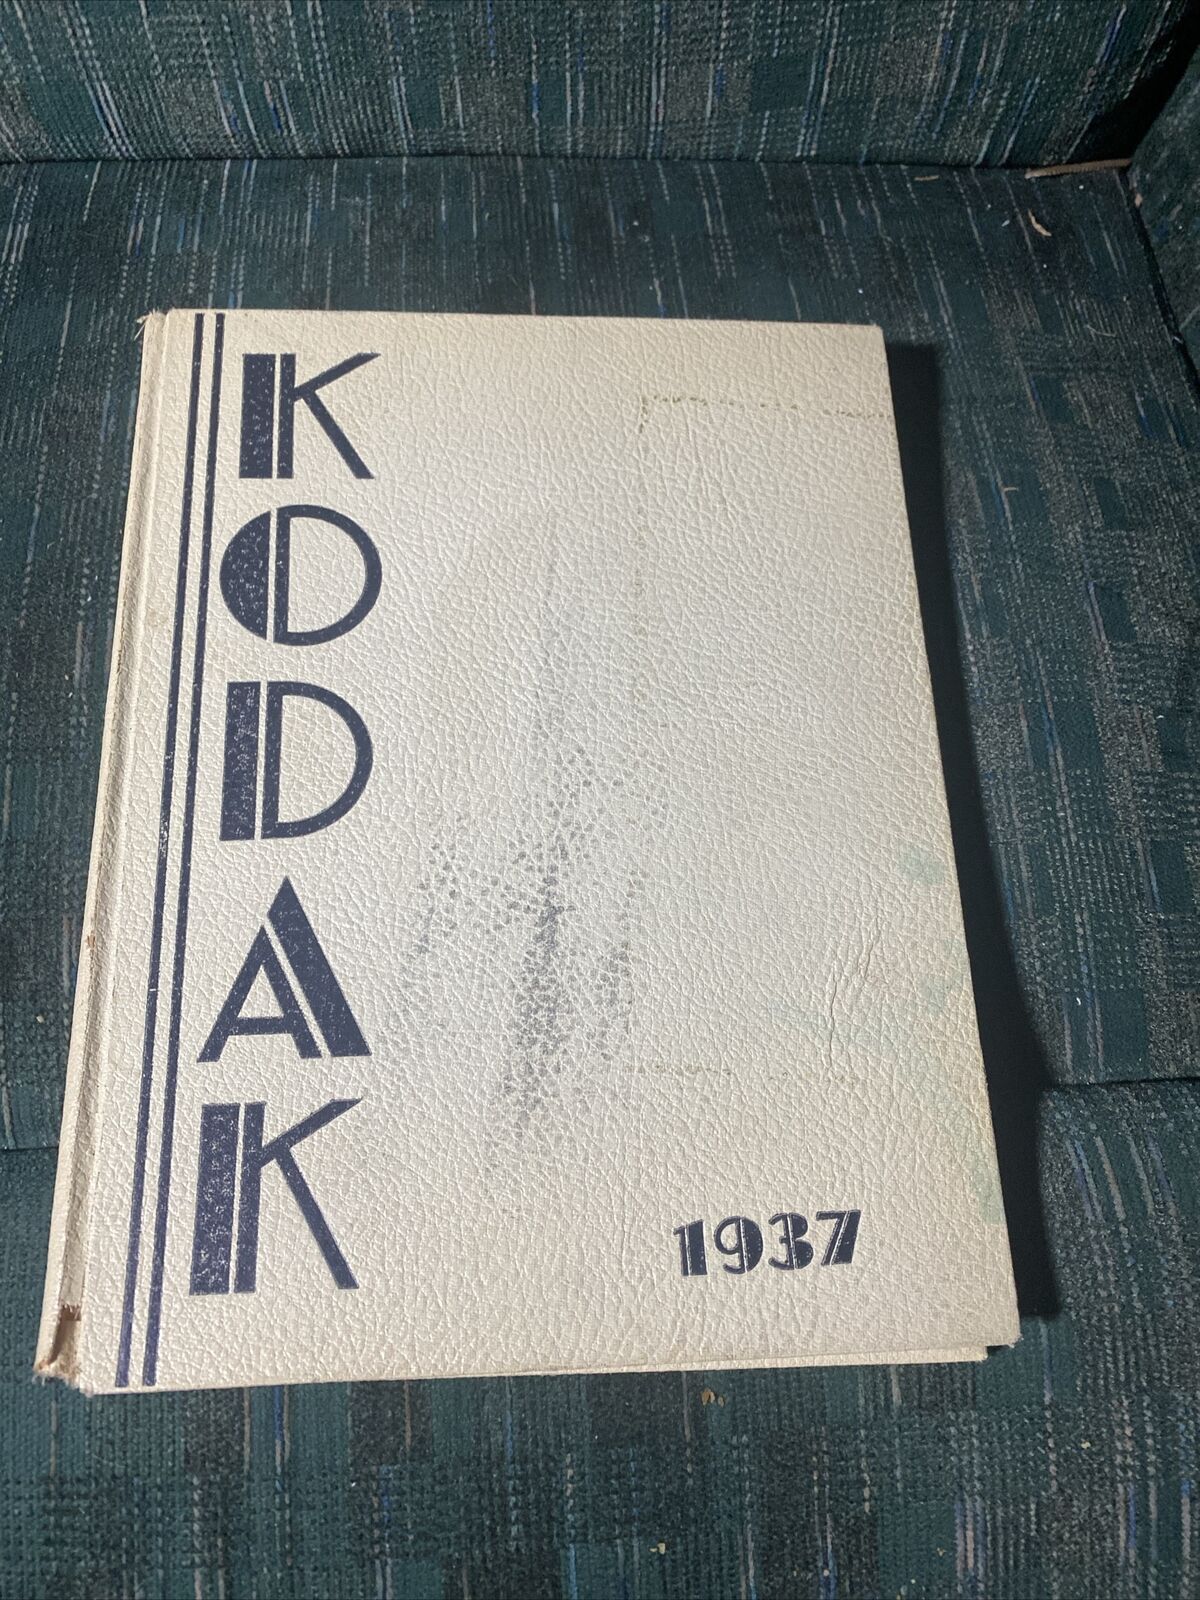 Vintage Kodak 1937 Eau Claire Senior High School Eau Claire WIsconsin Yearbook